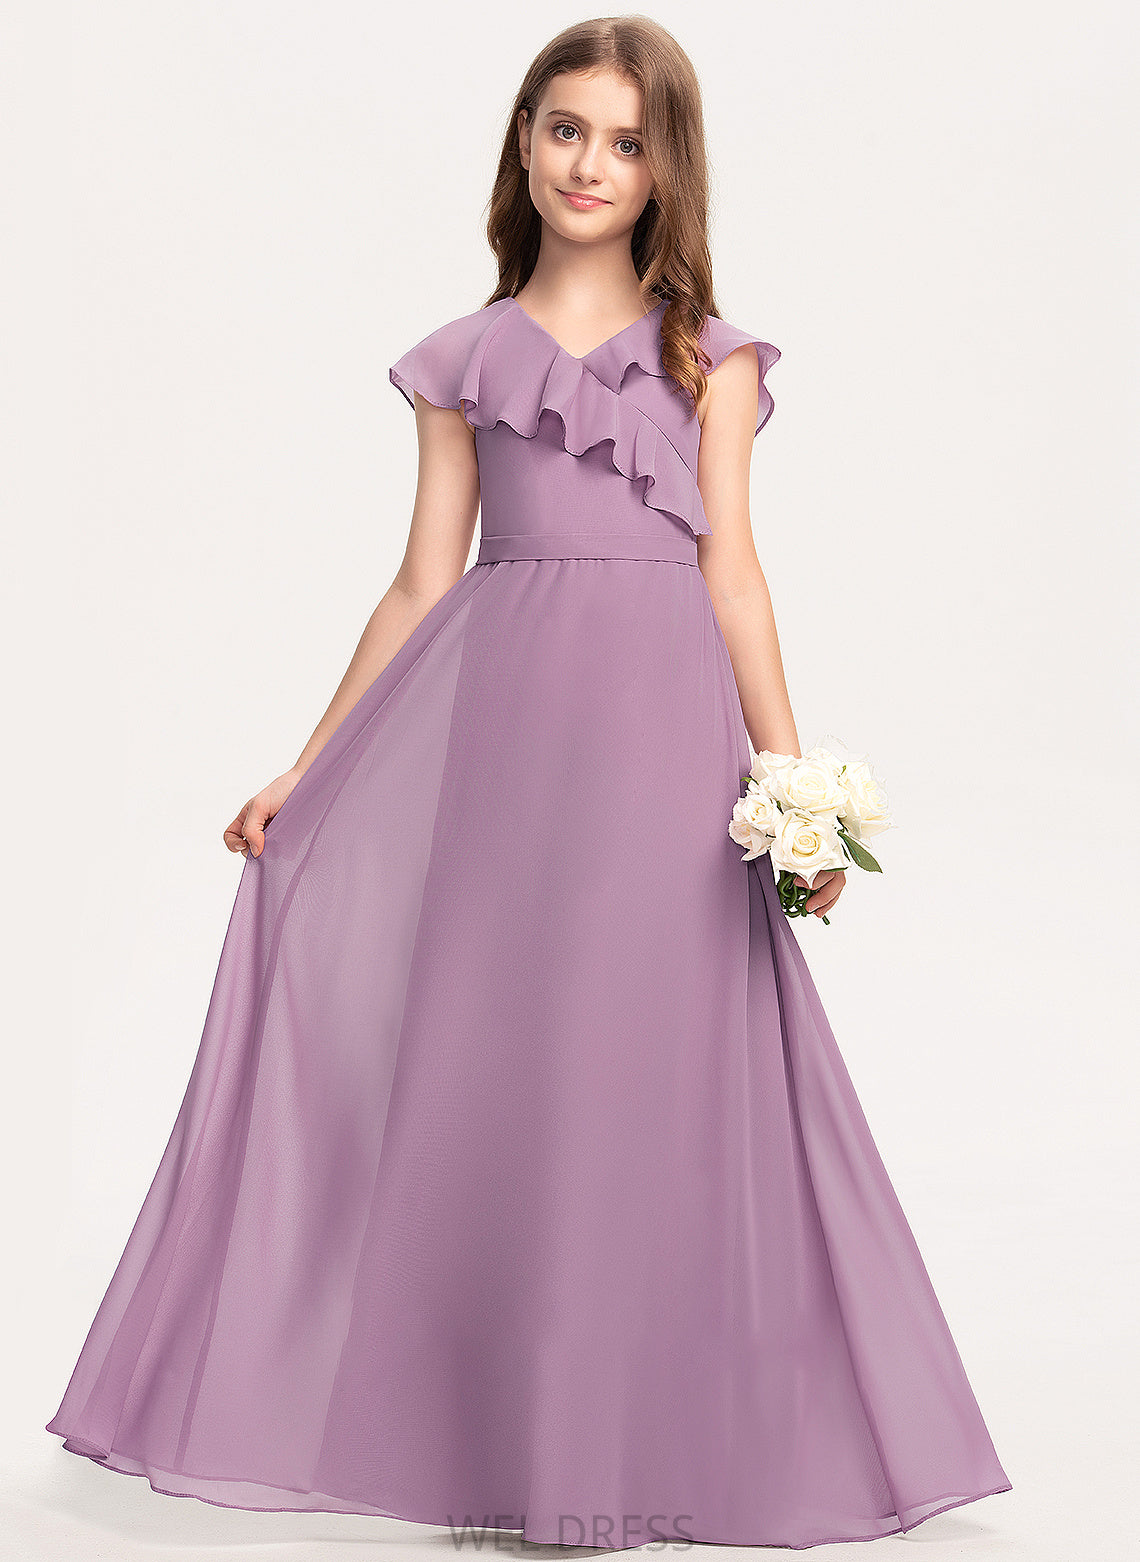 Ruffles Cascading Chiffon Floor-Length A-Line Cadence V-neck Bow(s) Junior Bridesmaid Dresses With